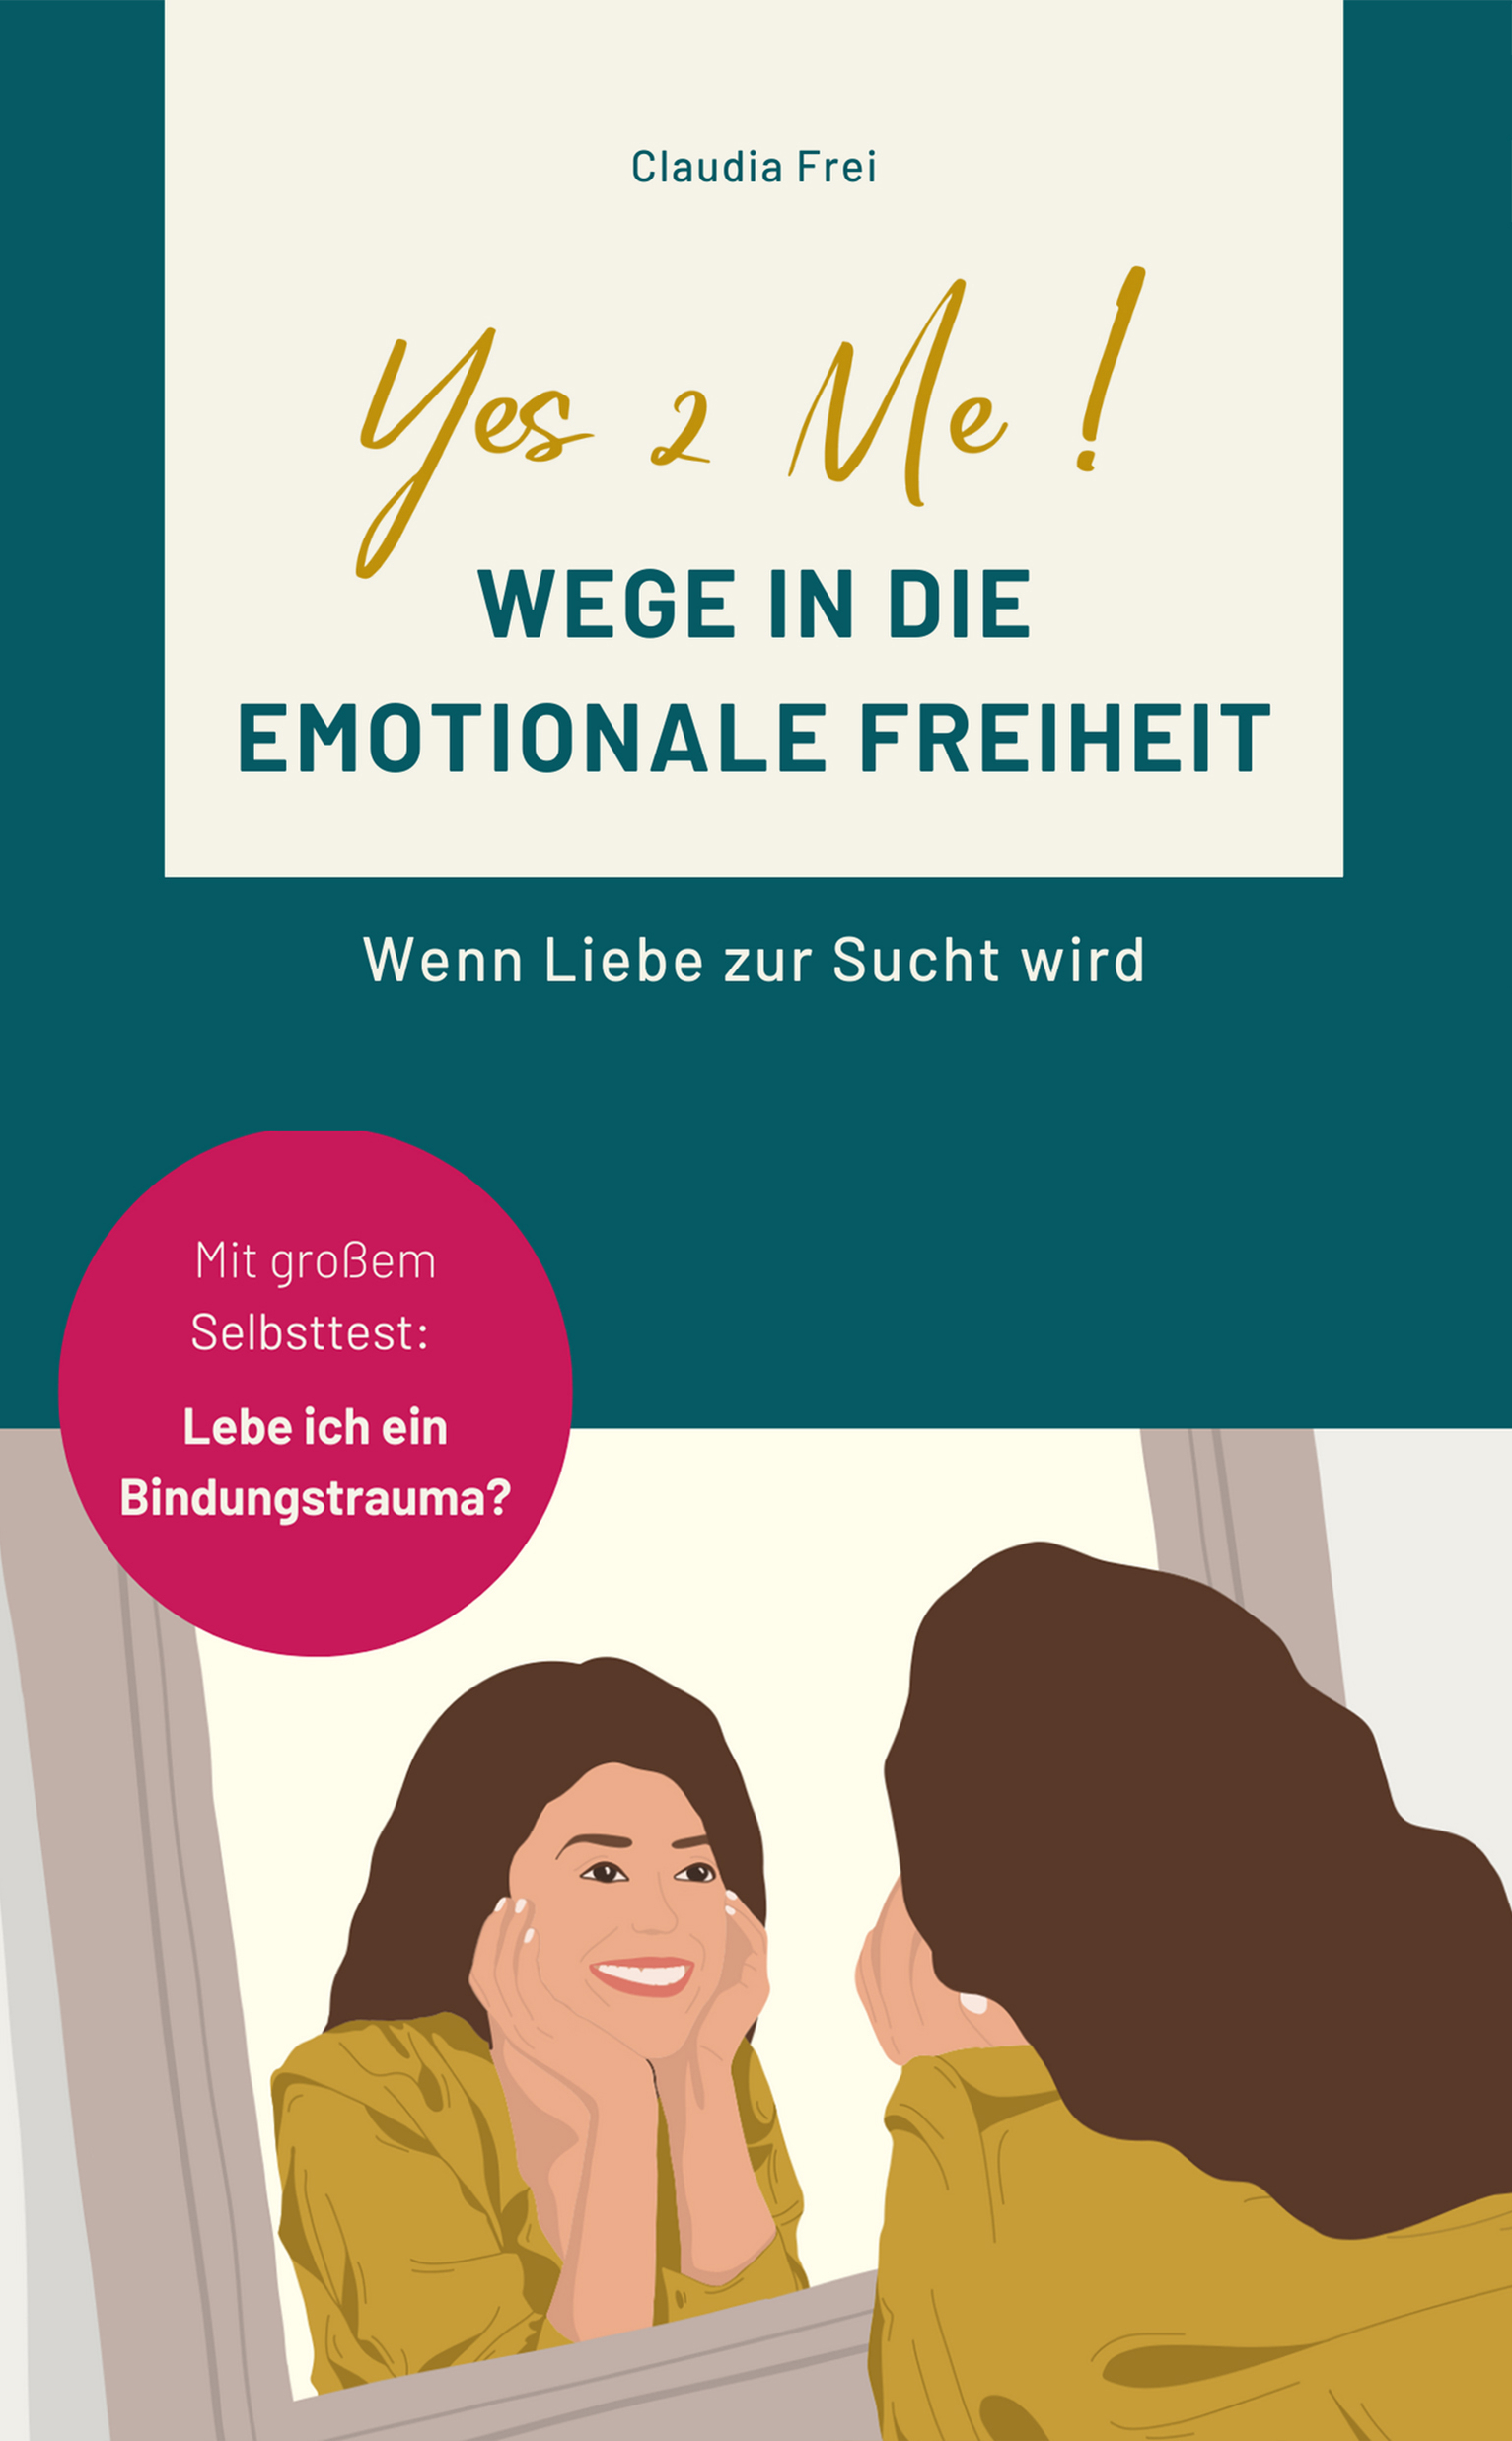 E-Book "Wege in die emotionale Freiheit"